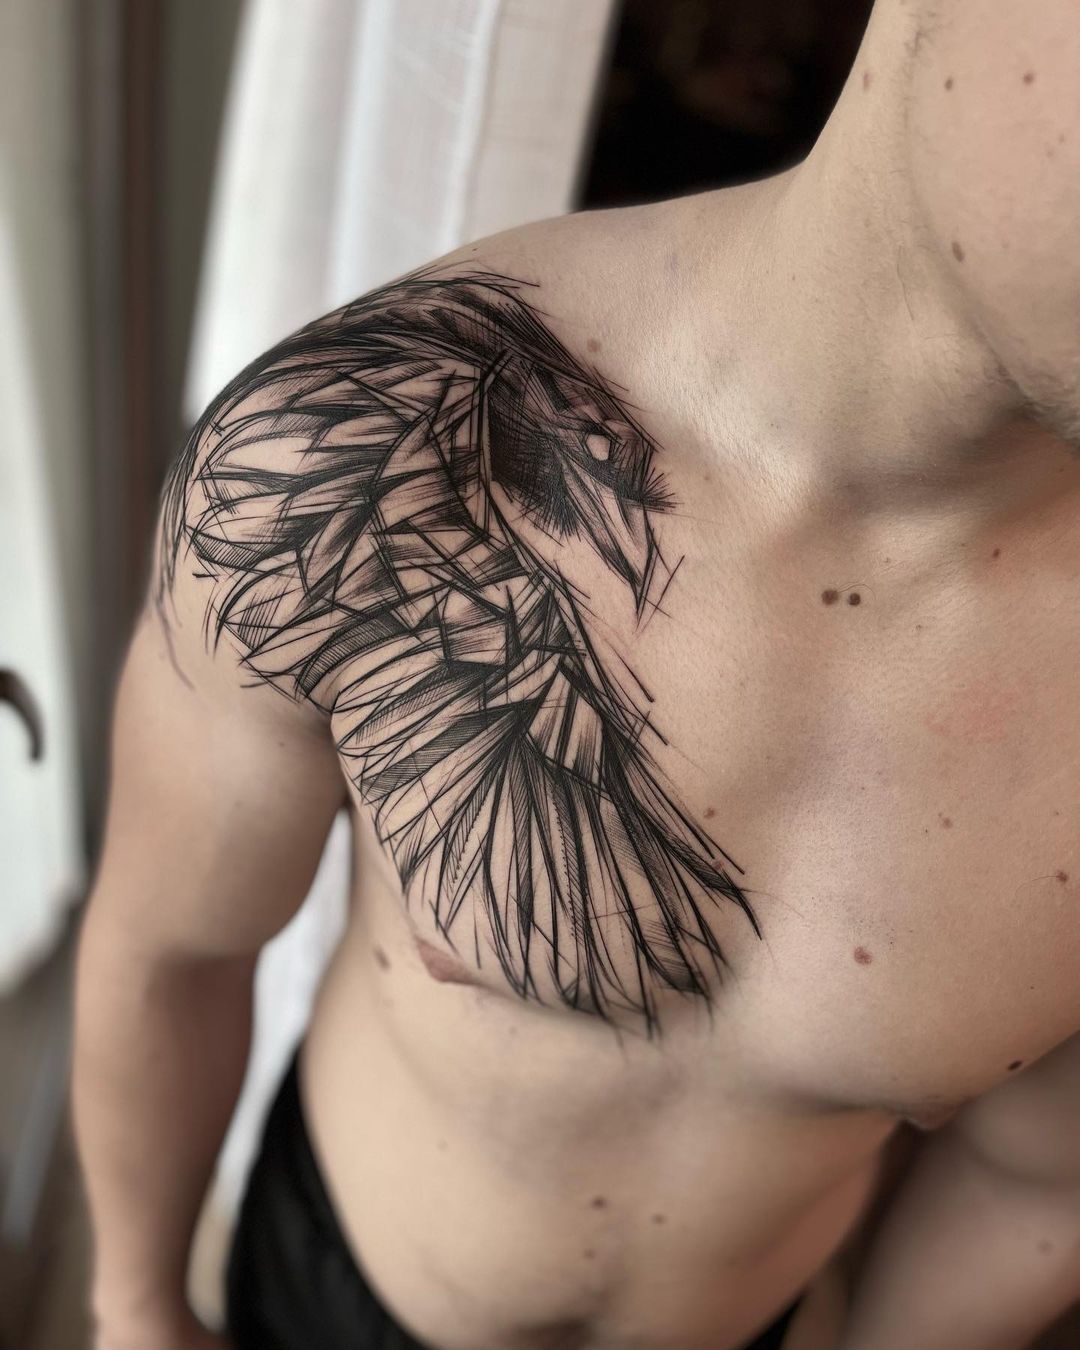 raven / crow tattoo by redtrujillo on DeviantArt